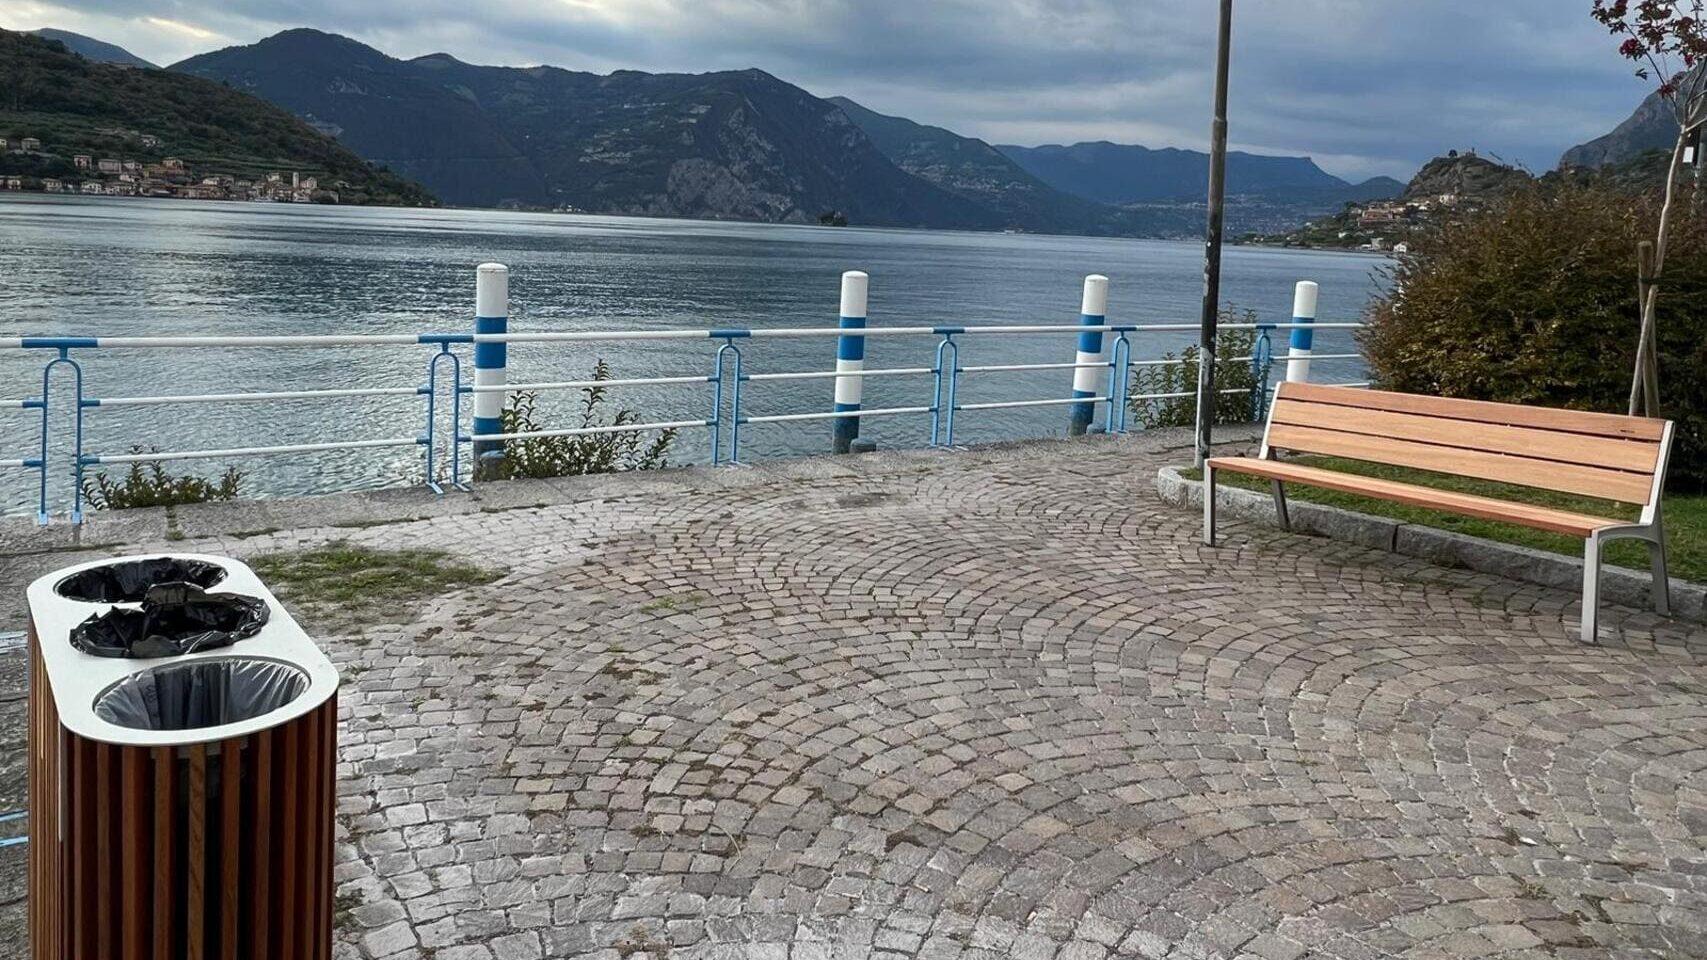 Comune di Sale Marasino sul Lago d'Iseo dettaglio panchine e cestini Ital-Way